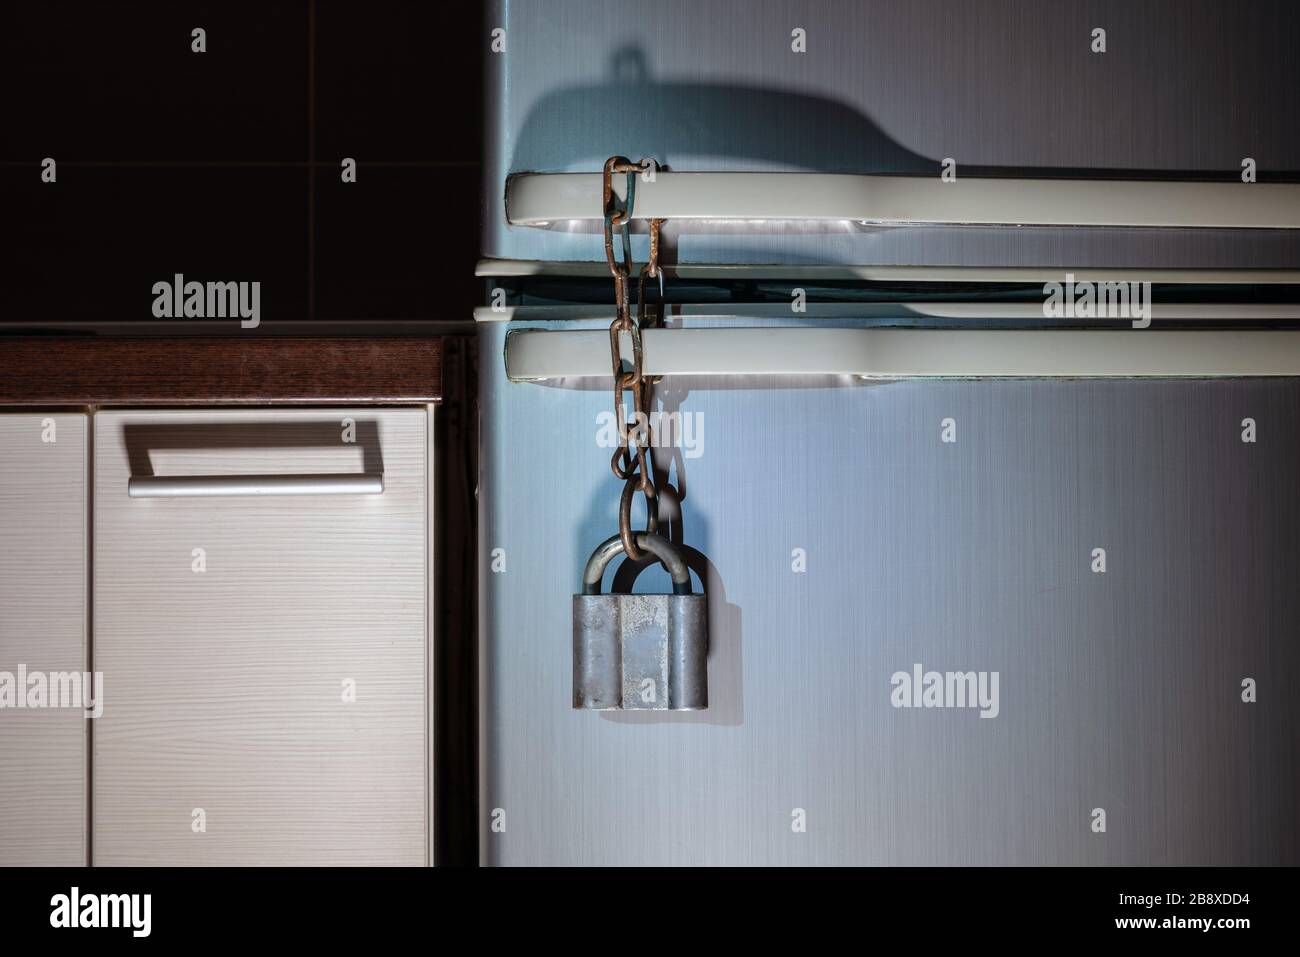 Verrouiller le frigo Banque de photographies et d'images à haute résolution  - Alamy